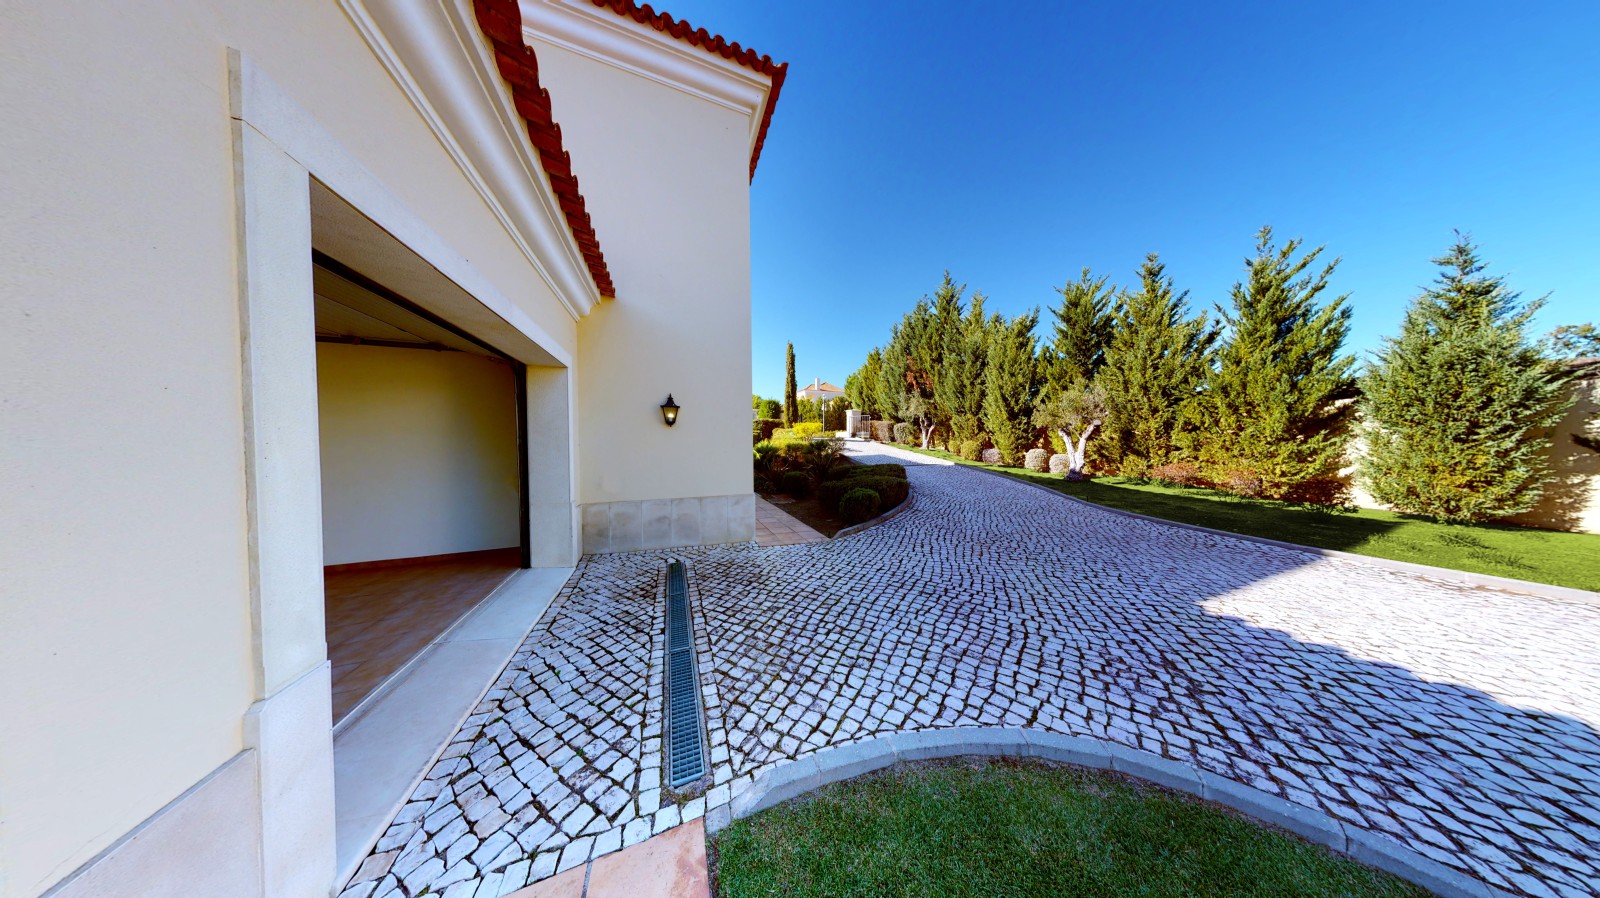 Moradia V4 com piscina, para venda em Vila Real de Santo Antonio, Algarve_215723